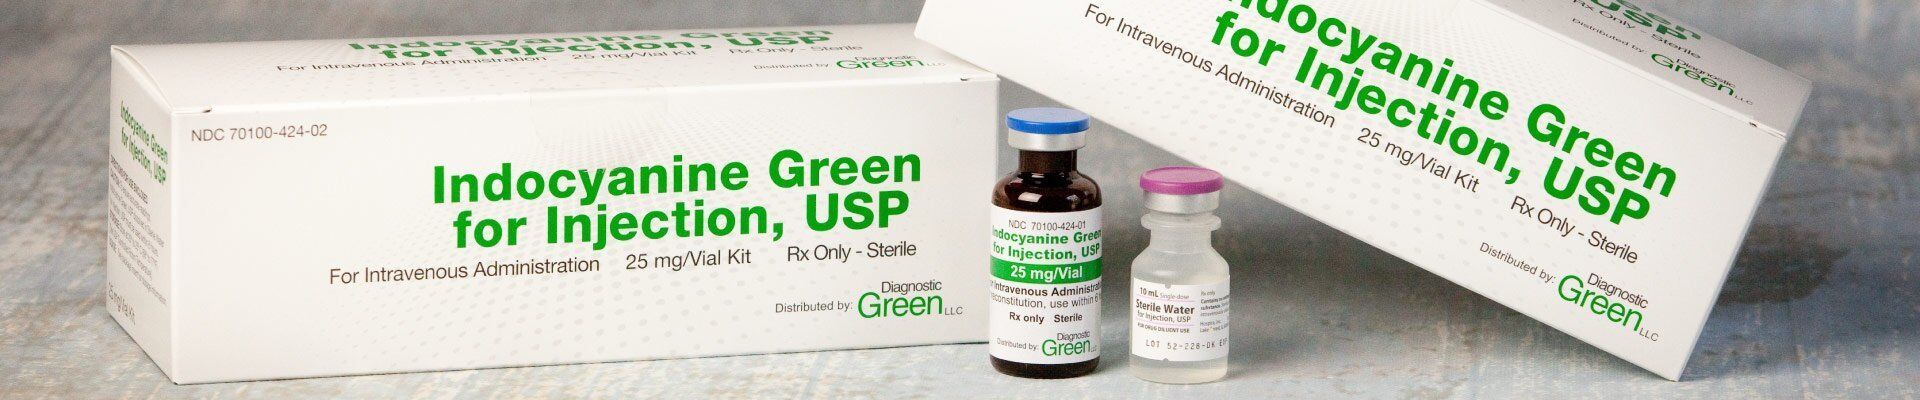 Diagnostic Greens product